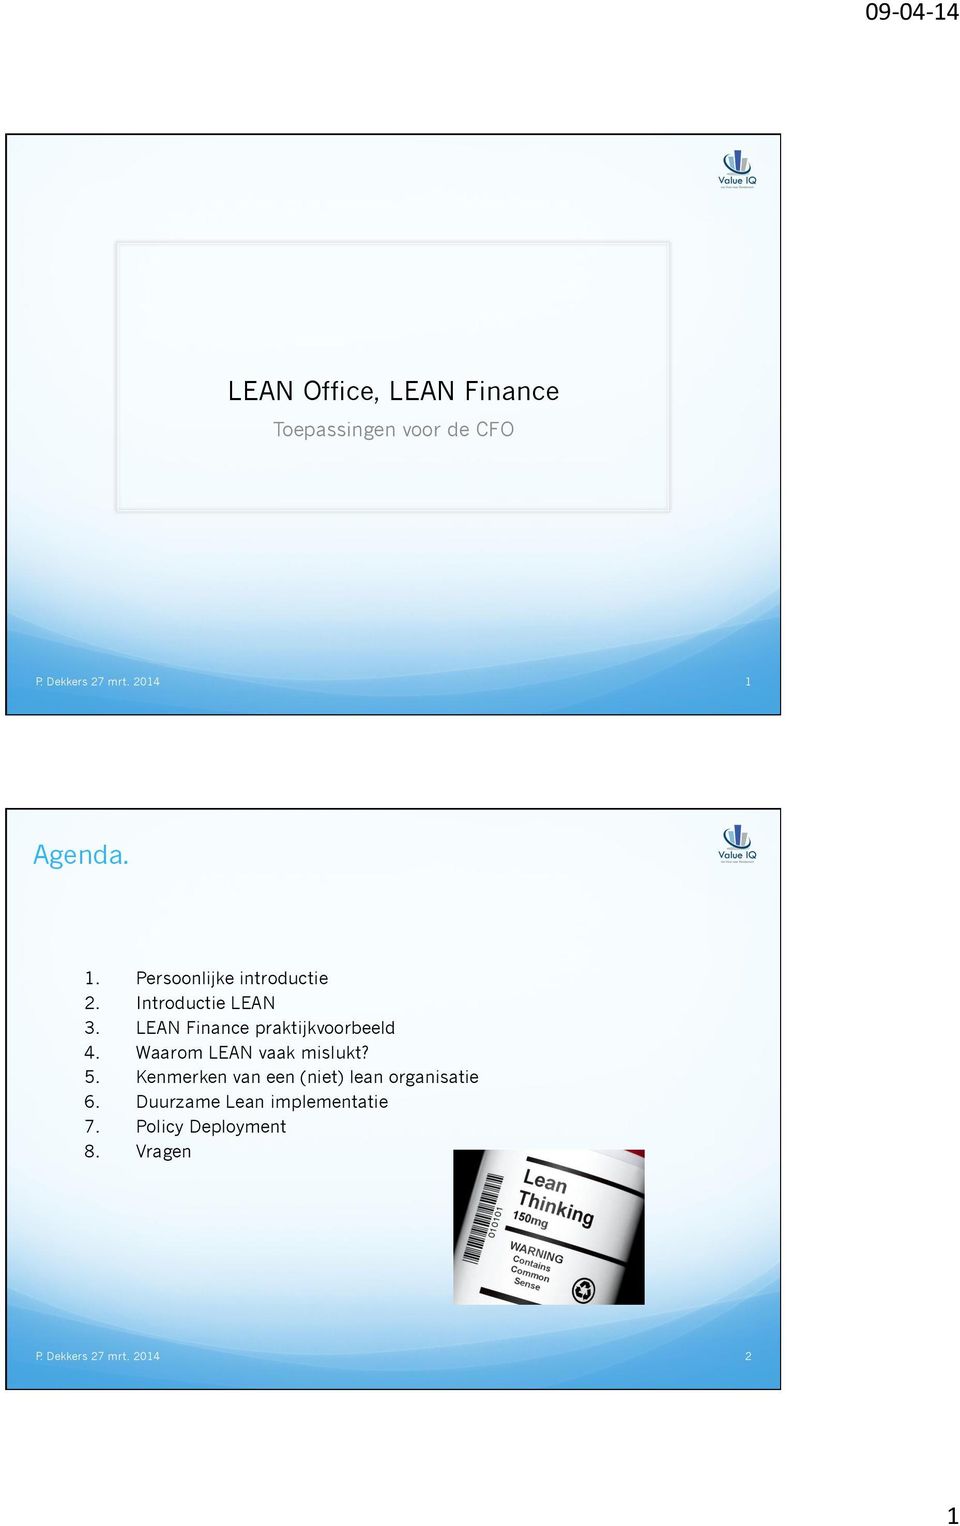 LEAN Finance praktijkvoorbeeld 4. Waarom LEAN vaak mislukt? 5.